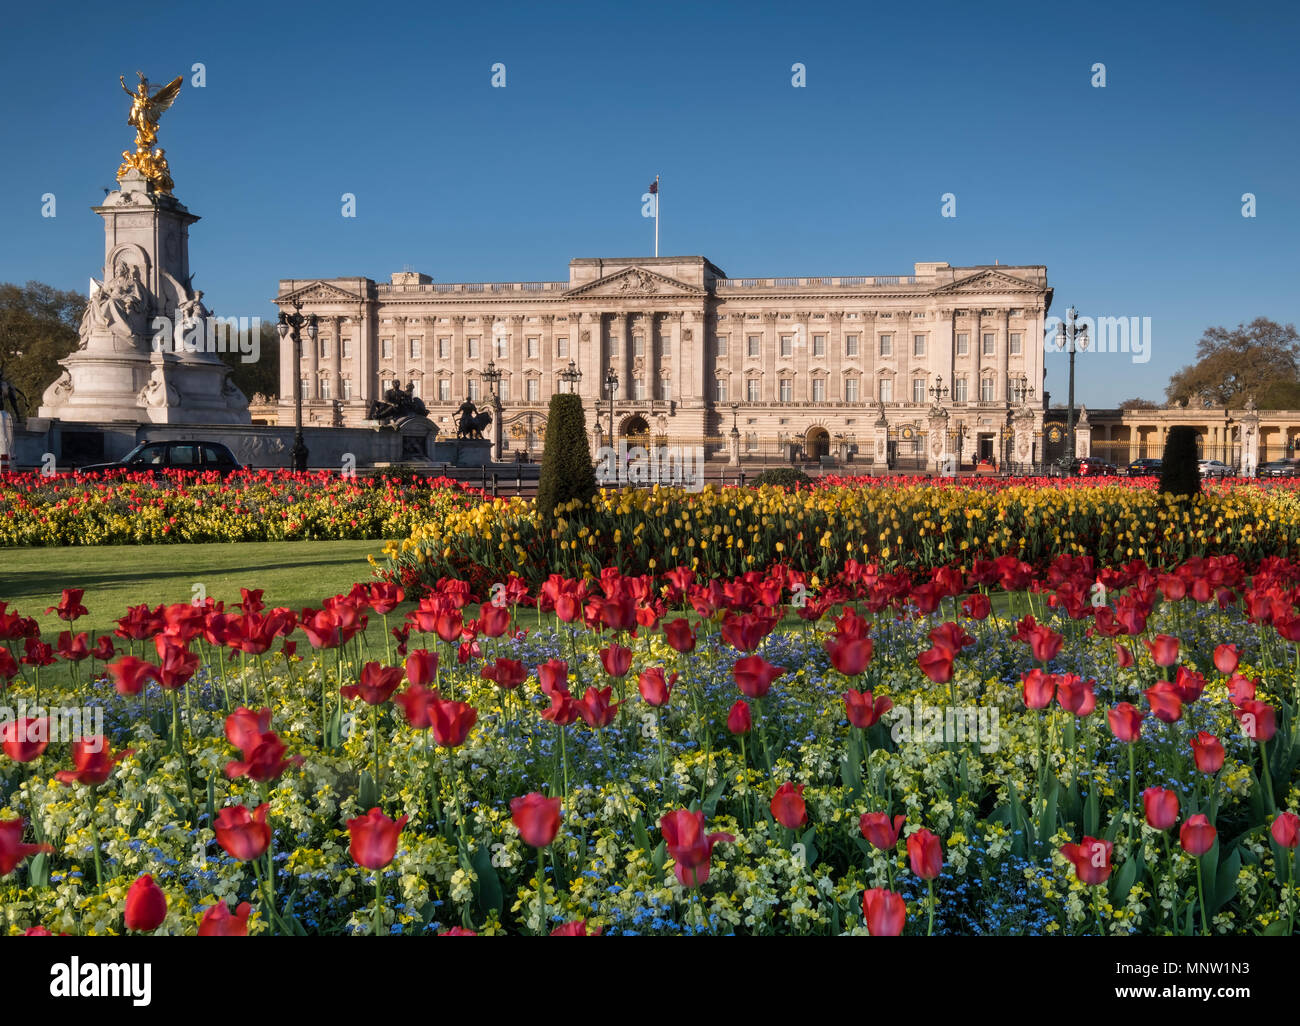 Le palais de Buckingham et du Victoria Memorial au printemps, London, England, UK Banque D'Images